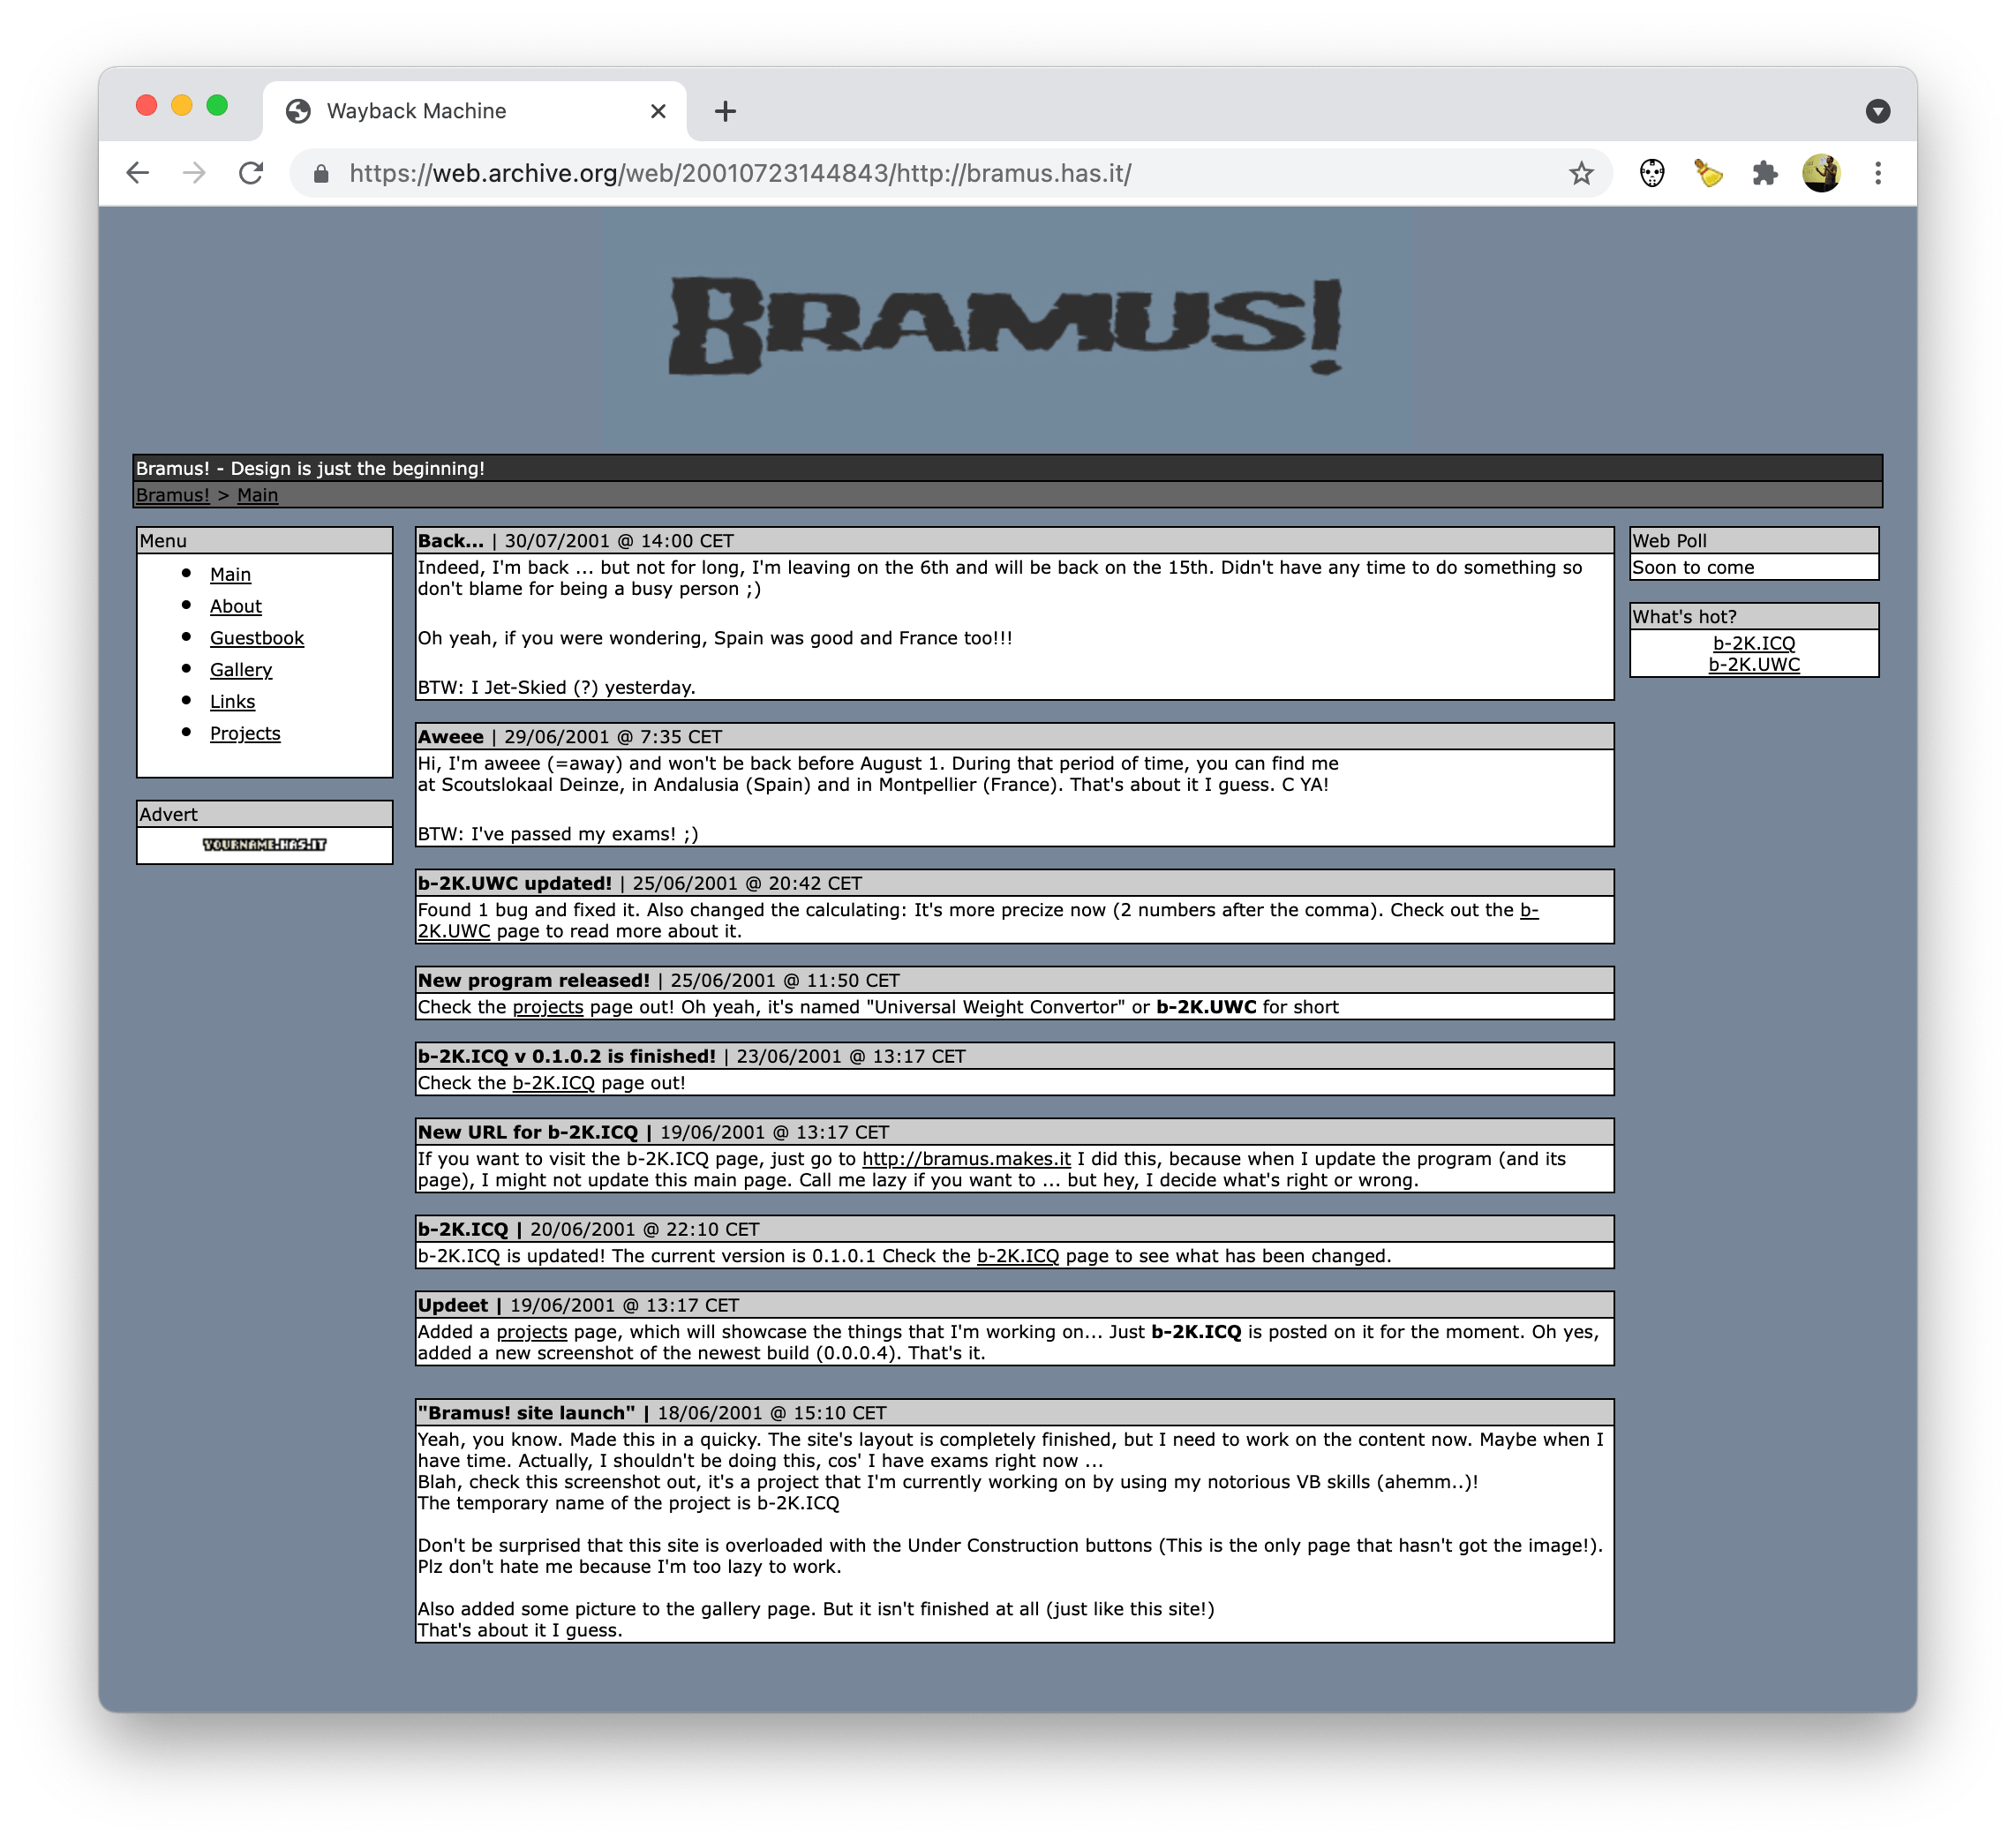 bramus-has-it.png